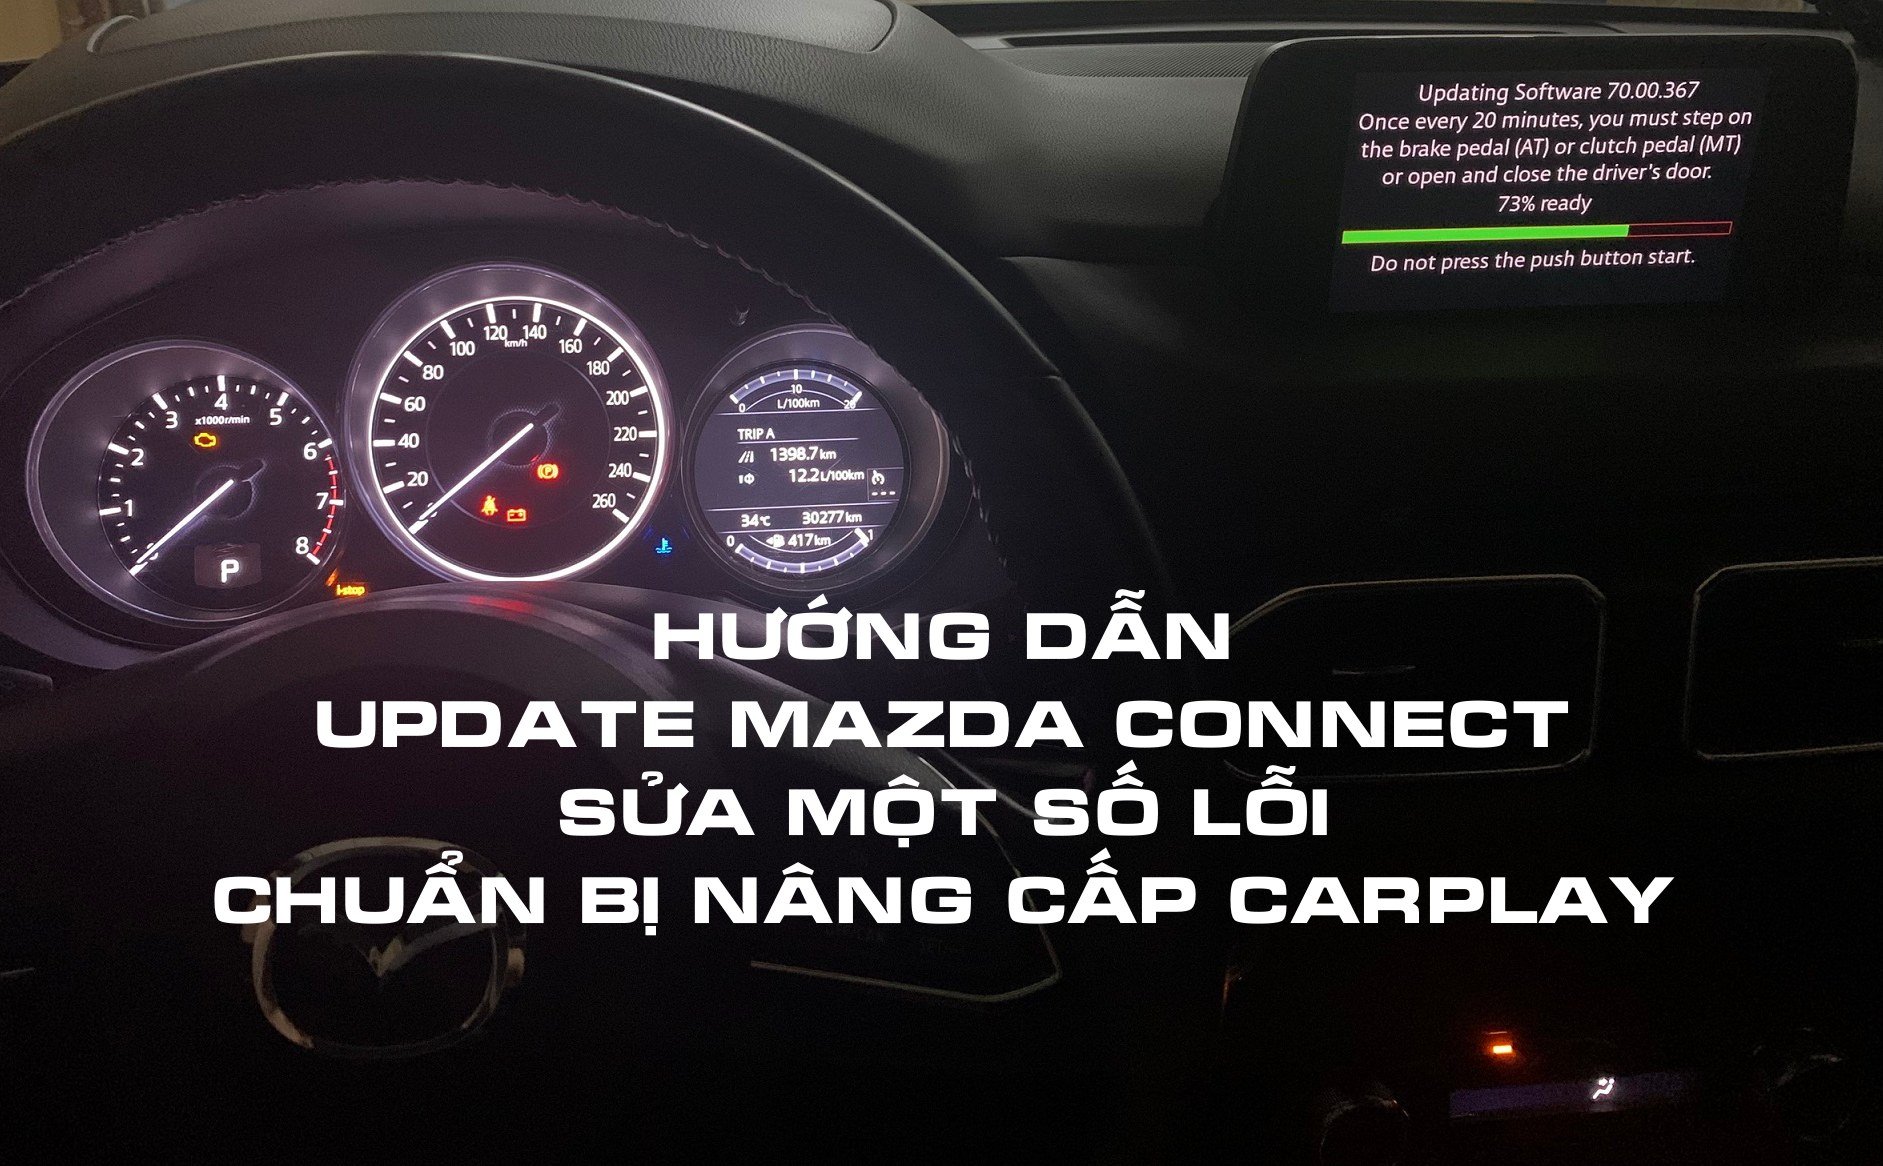 Hướng dẫn cách up phần mềm Mazda Connect xe Mazda để sửa lỗi, nâng cấp lên CarPlay, AndroidAuto